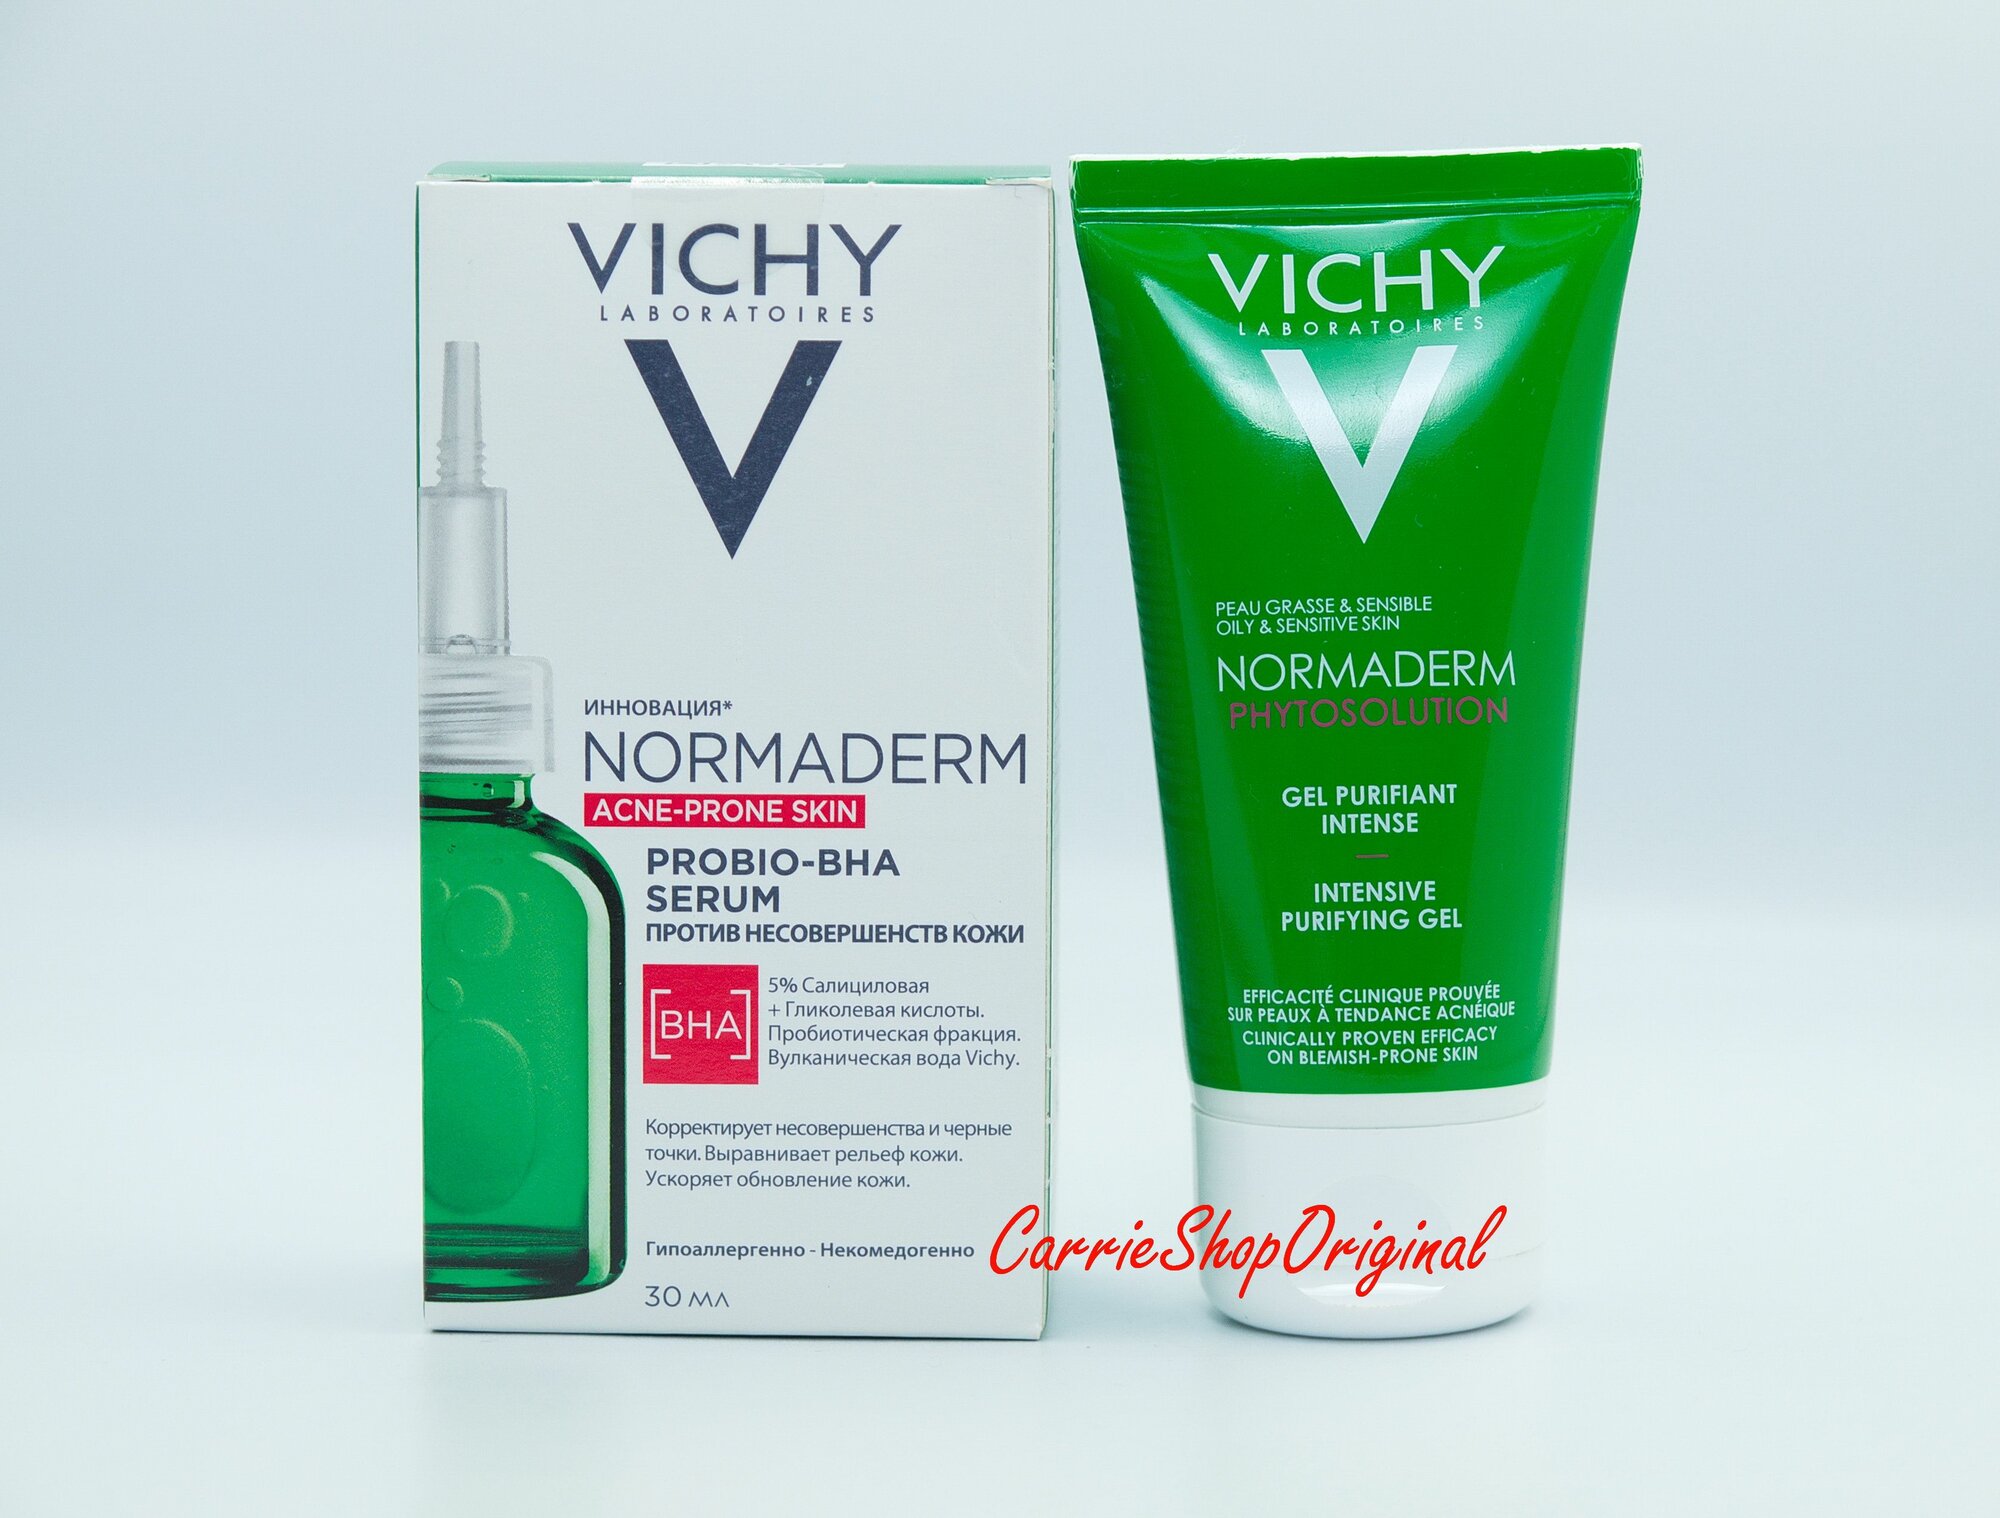 Vichy Normaderm Probio-BHA Serum Пробиотическая сыворотка против несовершенств кожи, 30 мл + Подарок Vichy Normaderm Phytosolution Очищающий гель для умывания, 50 мл